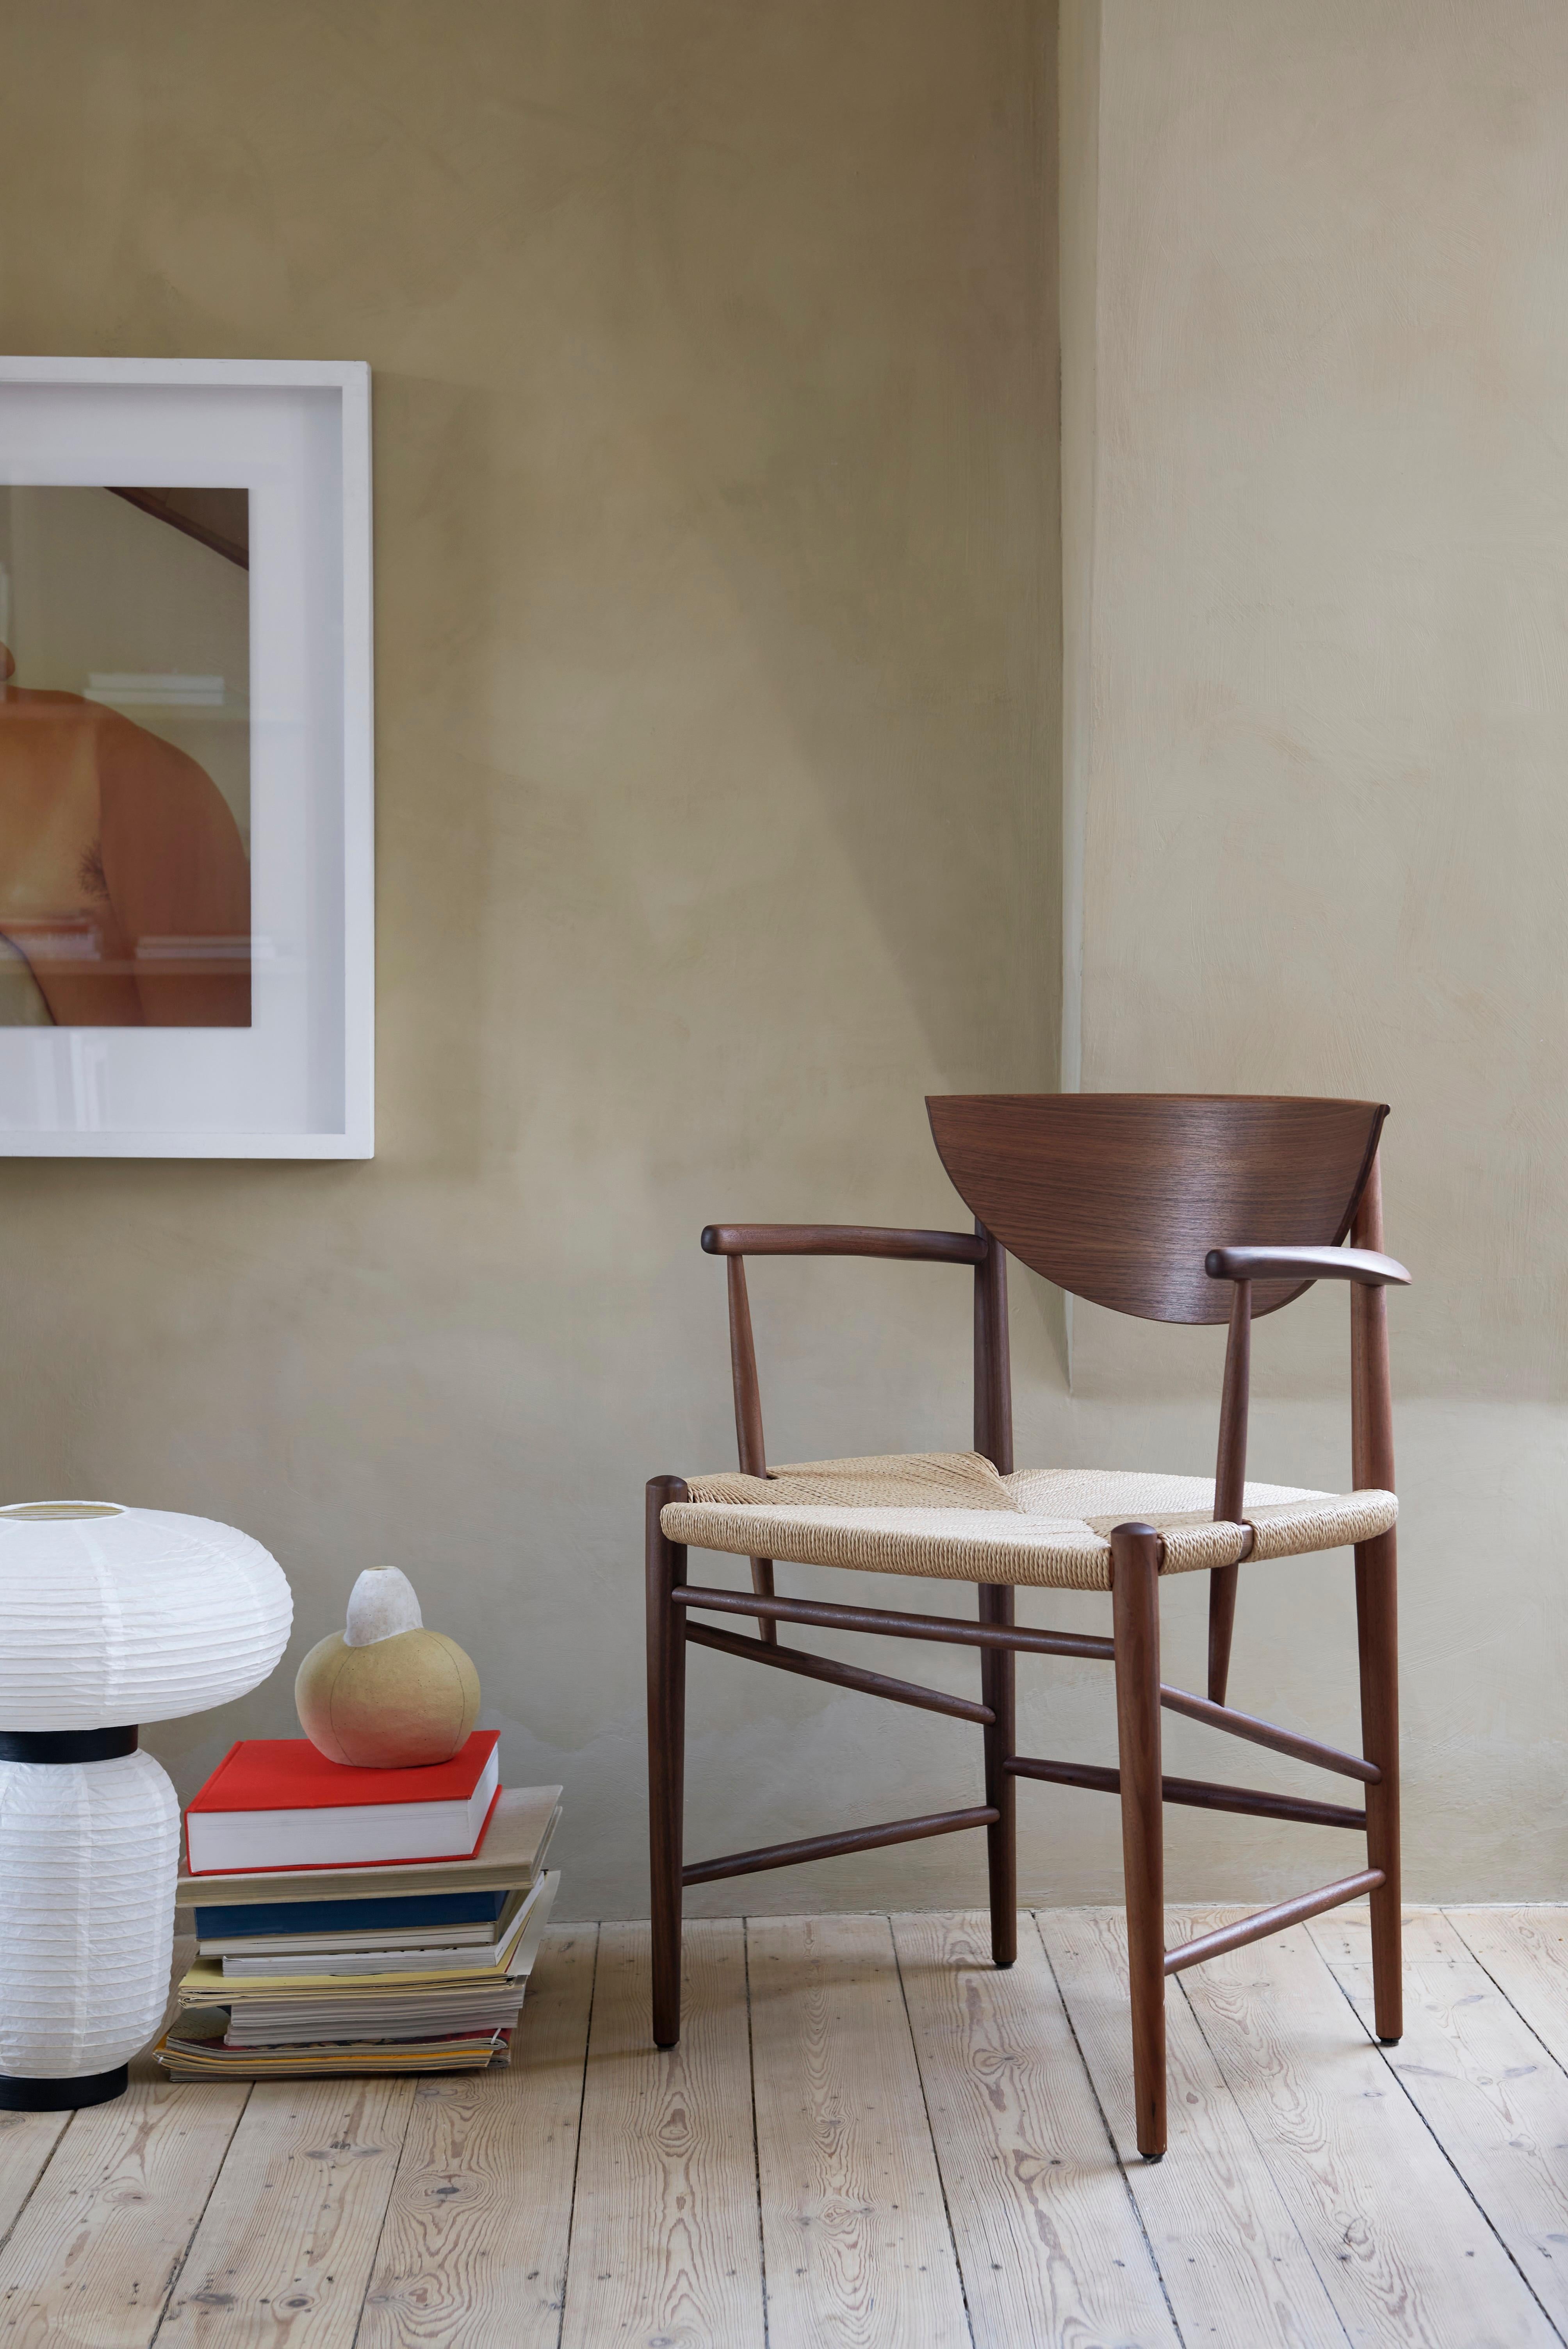 La chaise Drawn 1956 de Hvidt & Mølgaard est une pièce maîtresse du design danois.
 S'appuyant sur des techniques artisanales traditionnelles et construit à partir de matériaux organiques, il apporte un sentiment d'honnêteté saine à tout espace. 
Il